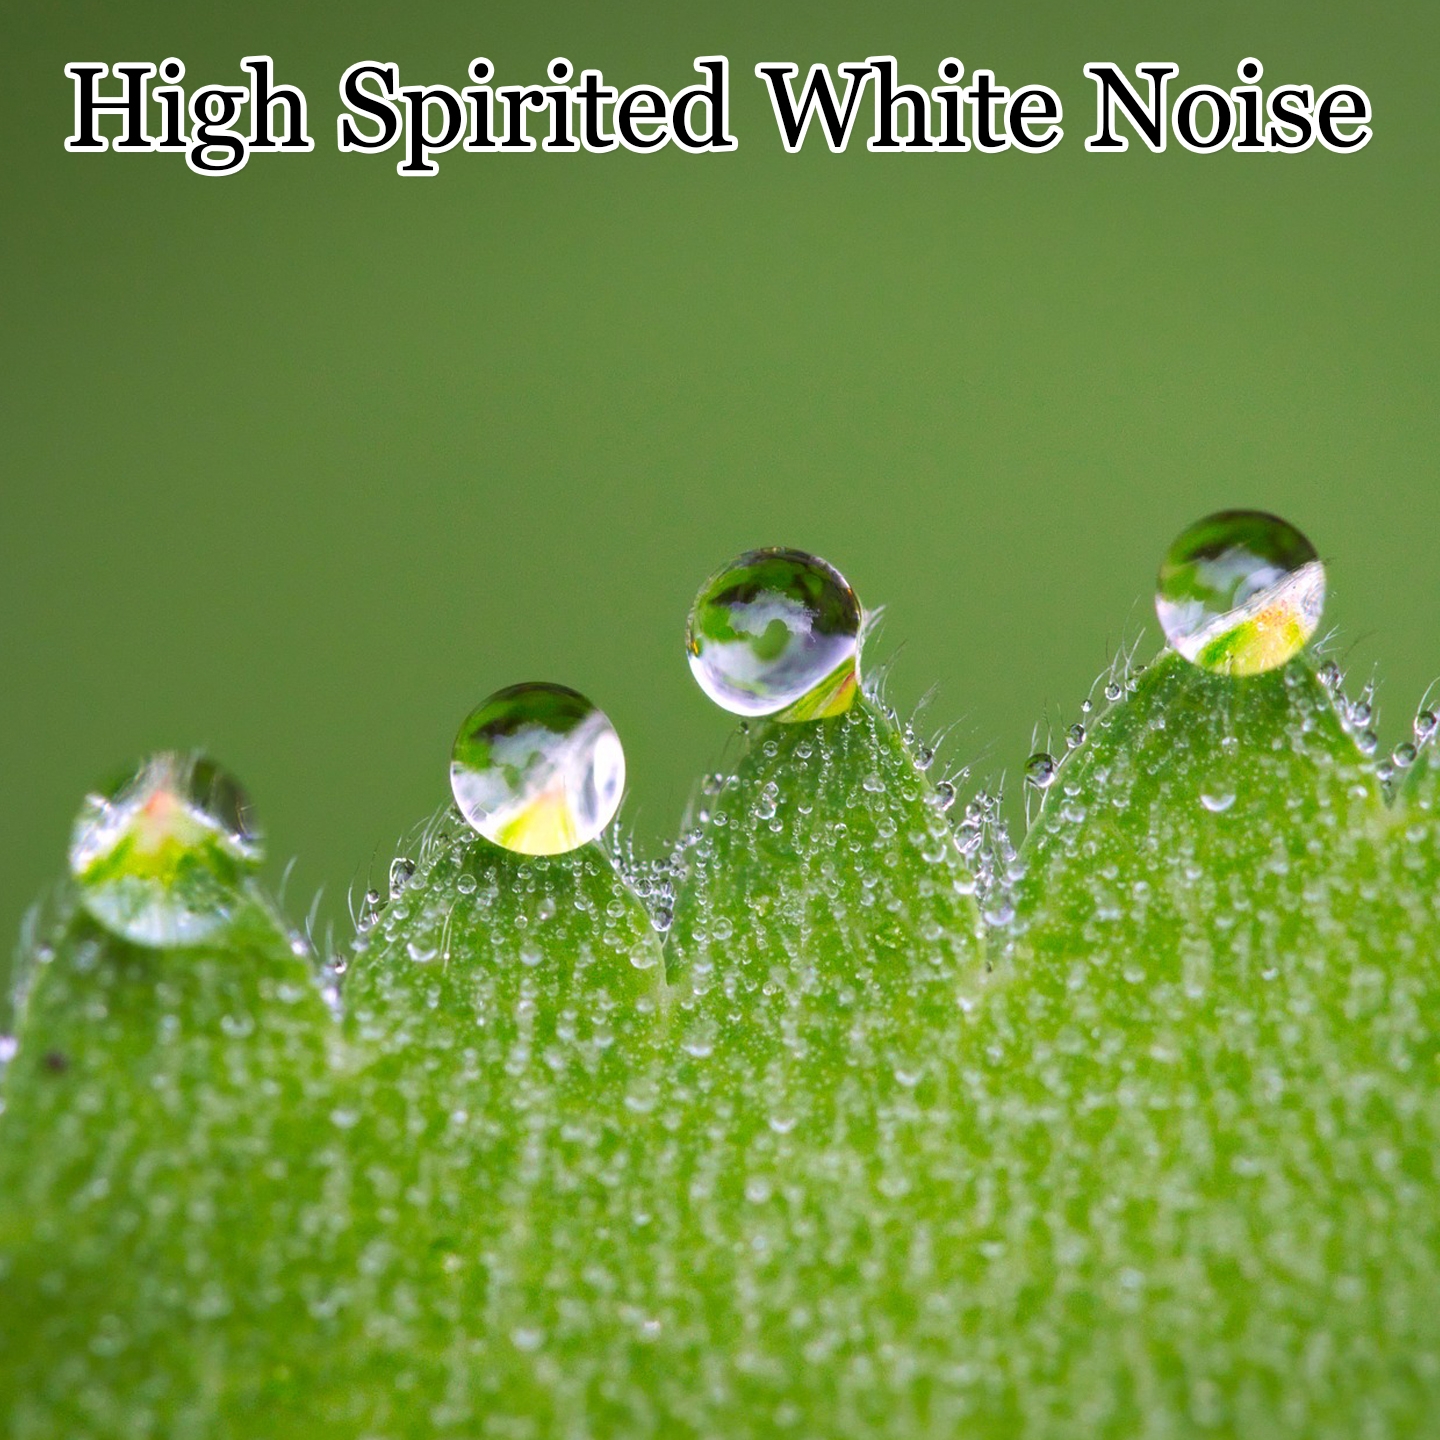 High Spirited White Noise